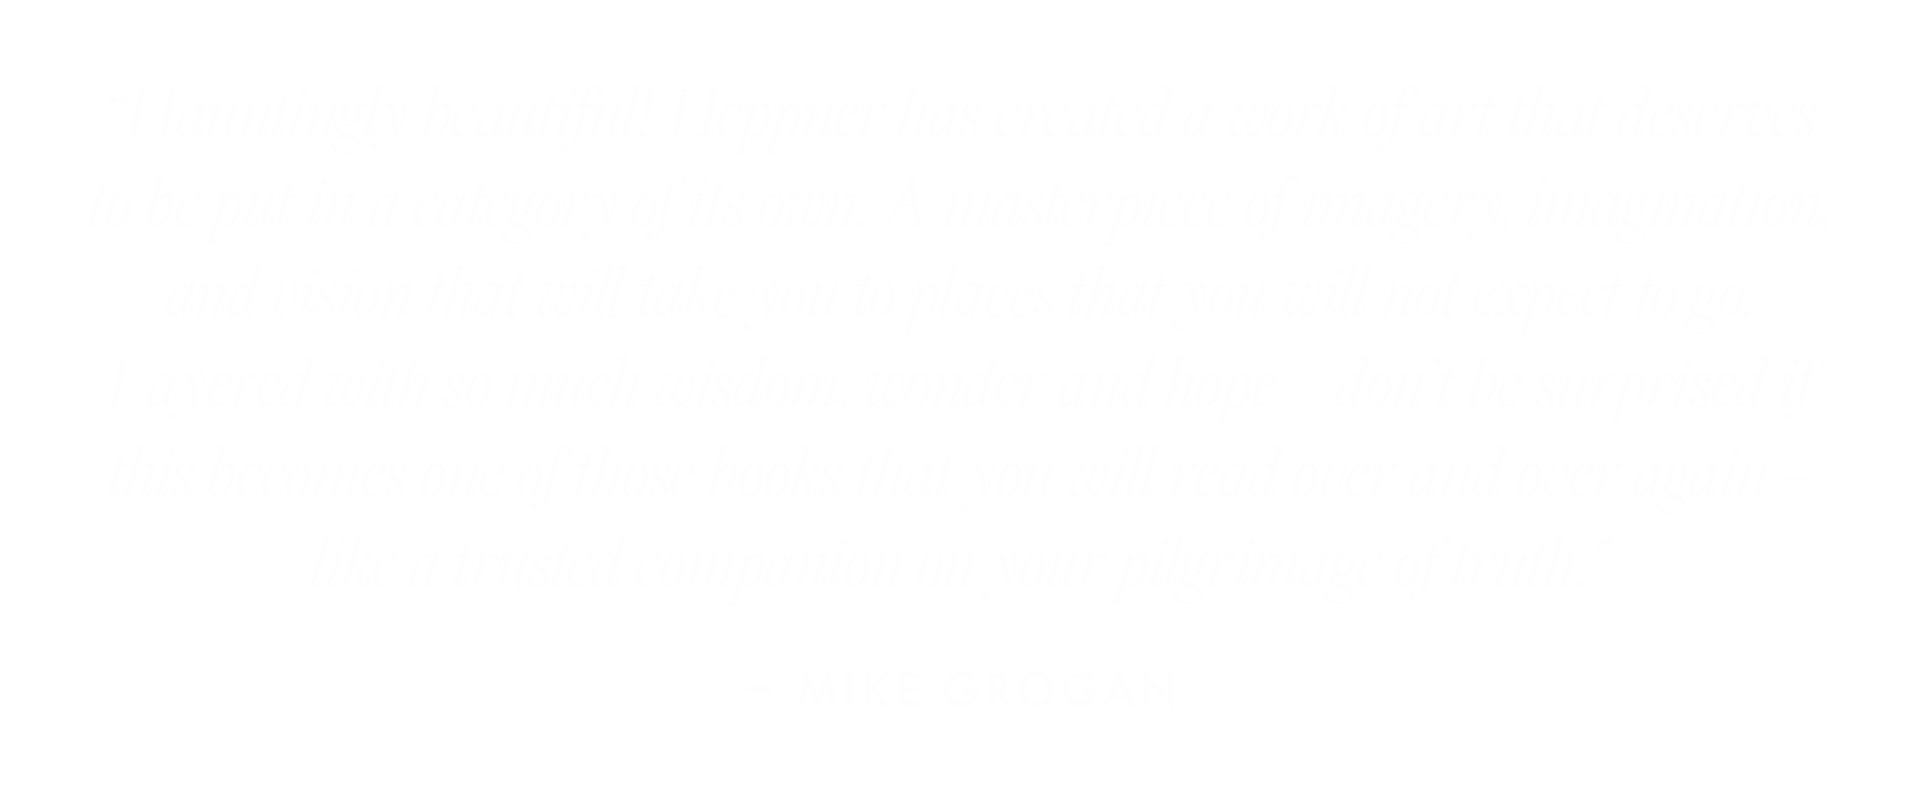 Mike-Grogan.png